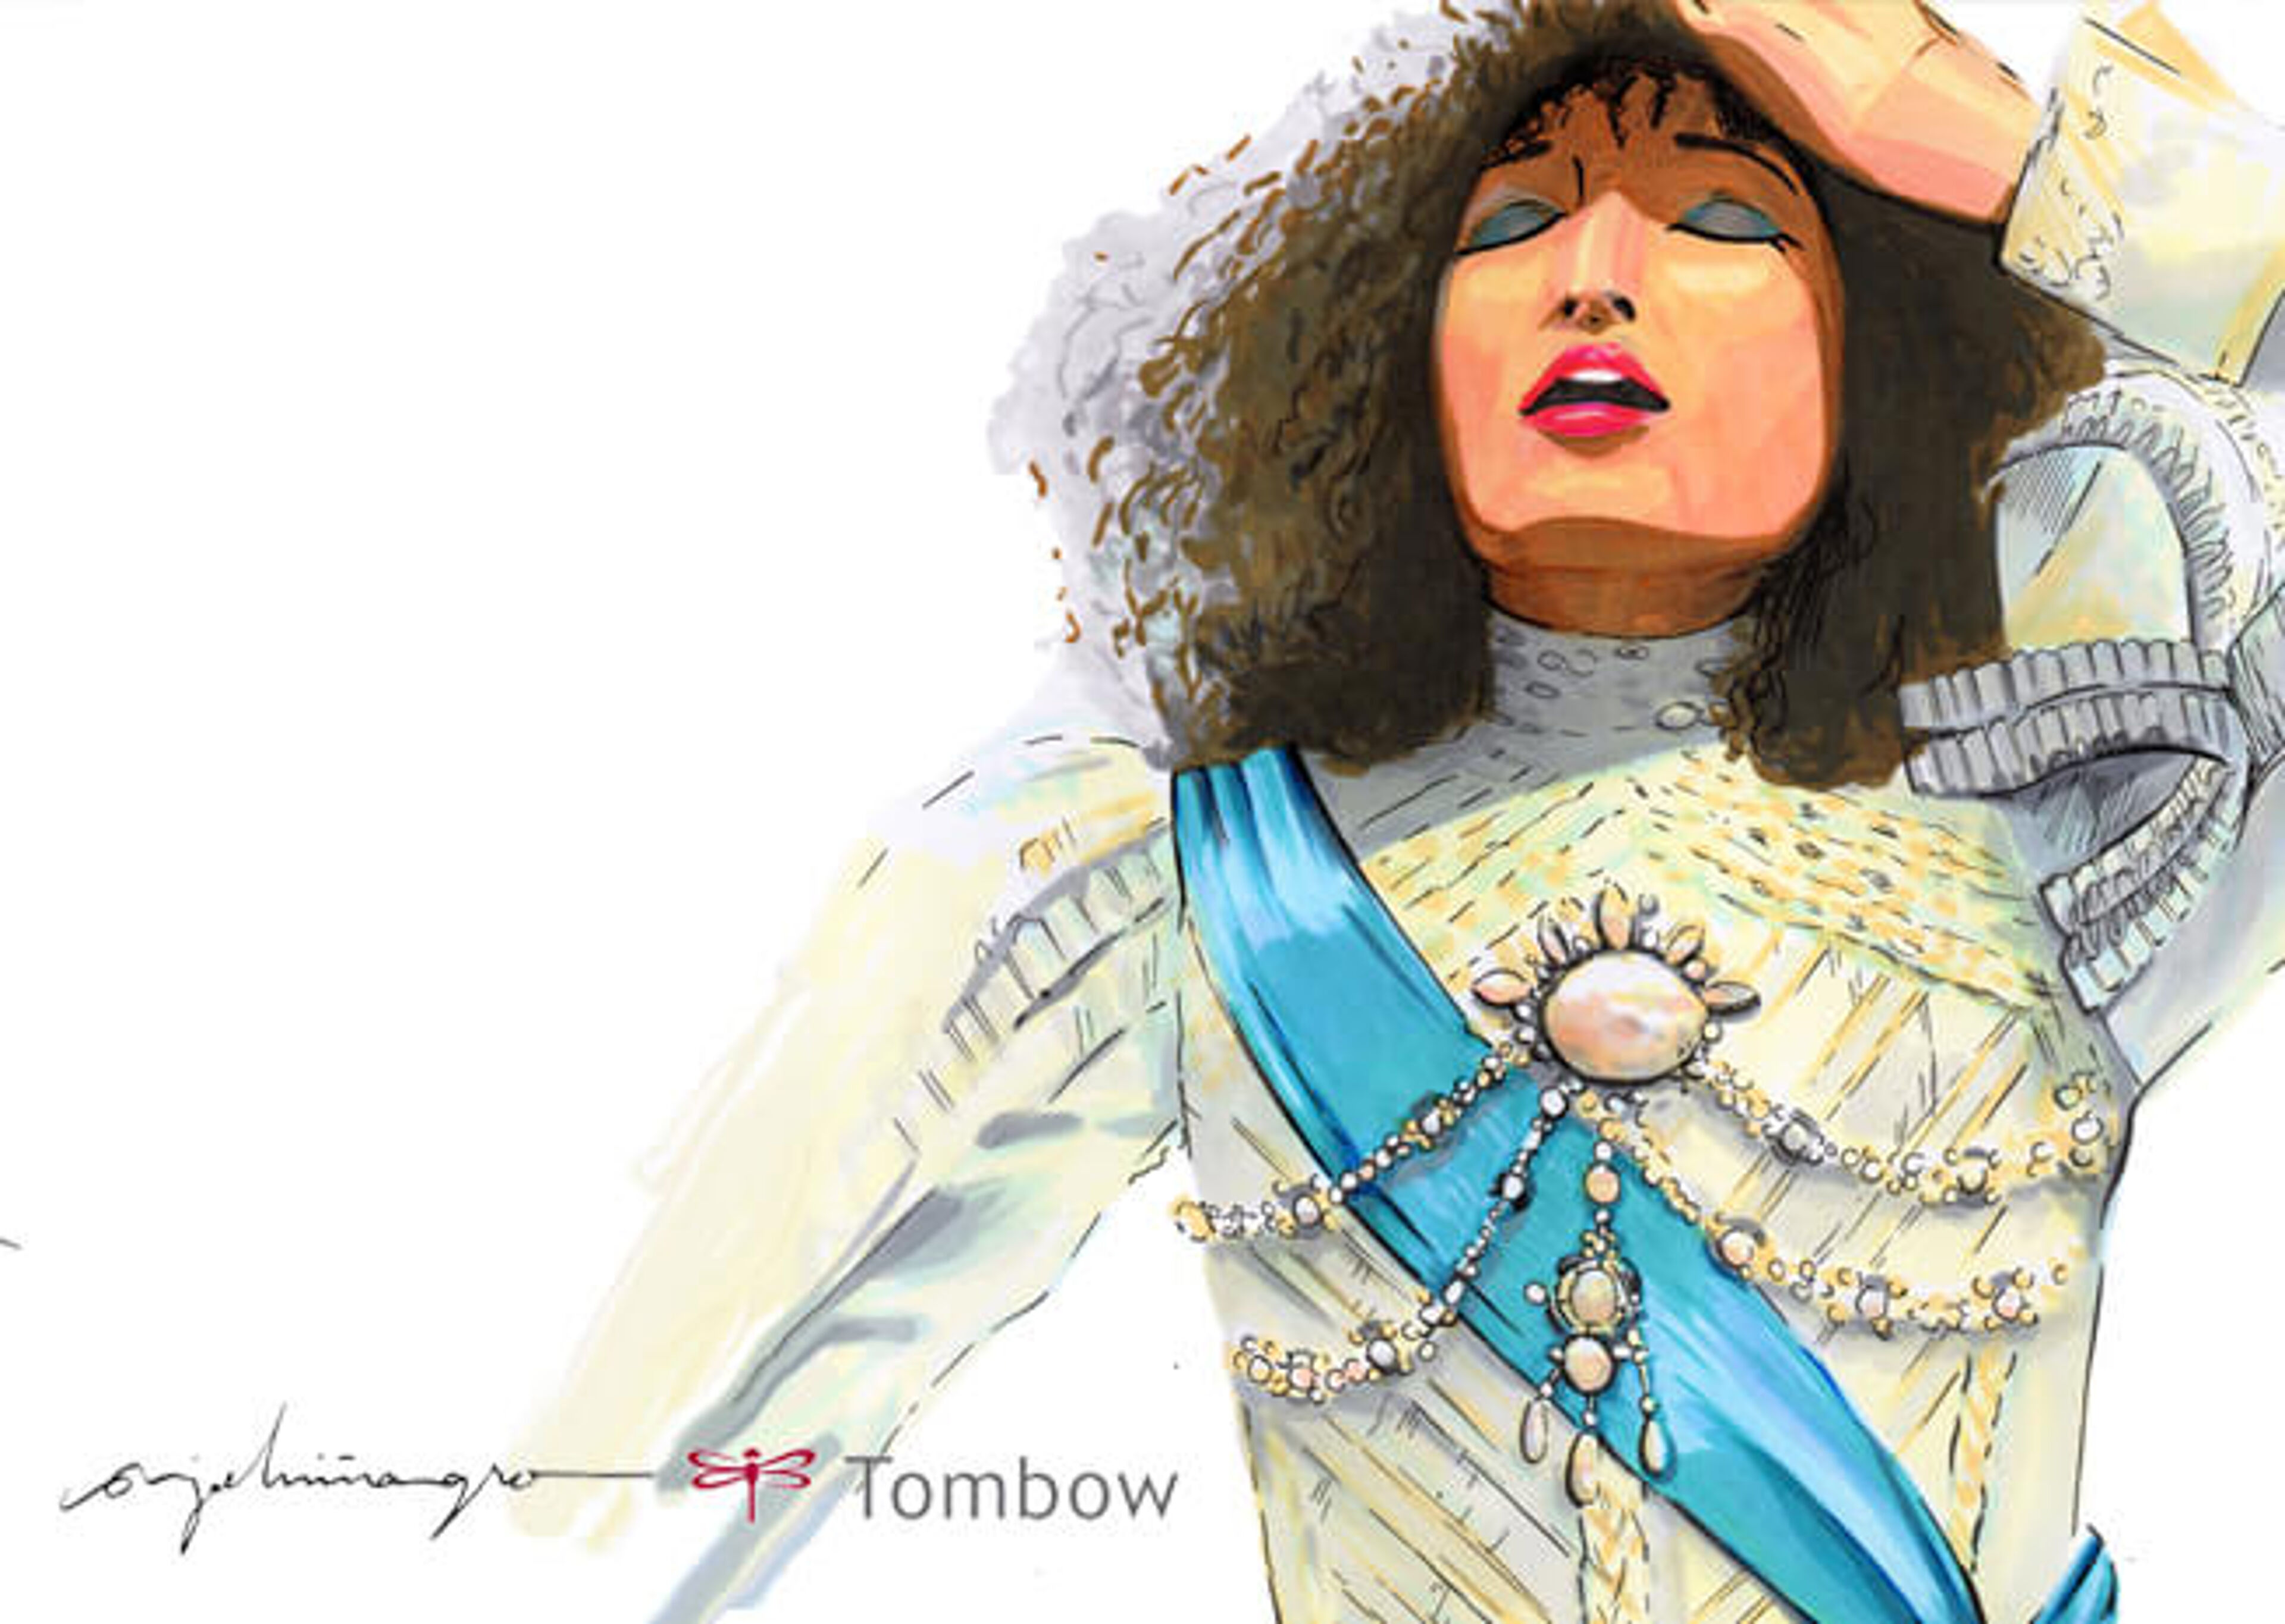 Imatge dibuixada a mà d'una dona en pose contemplativa, adornada amb perles i roba vintage, amb signatura i logotip "Tombow".